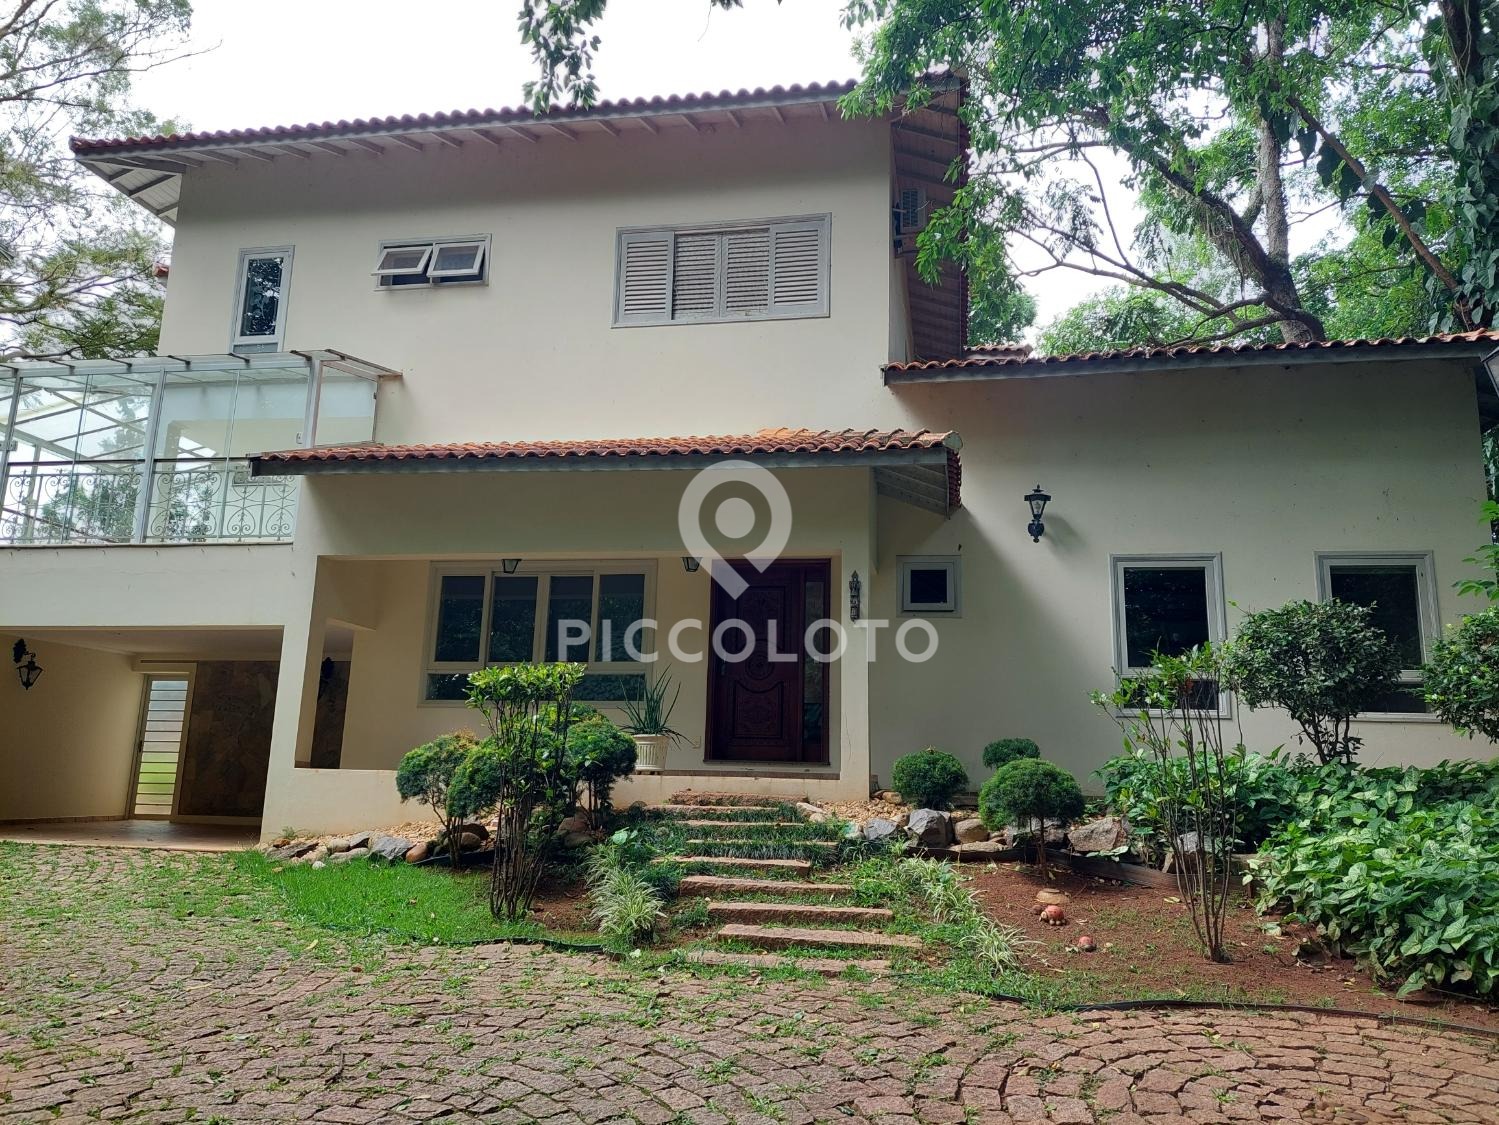 Piccoloto - Casa à venda no Chácaras São Quirino em Campinas